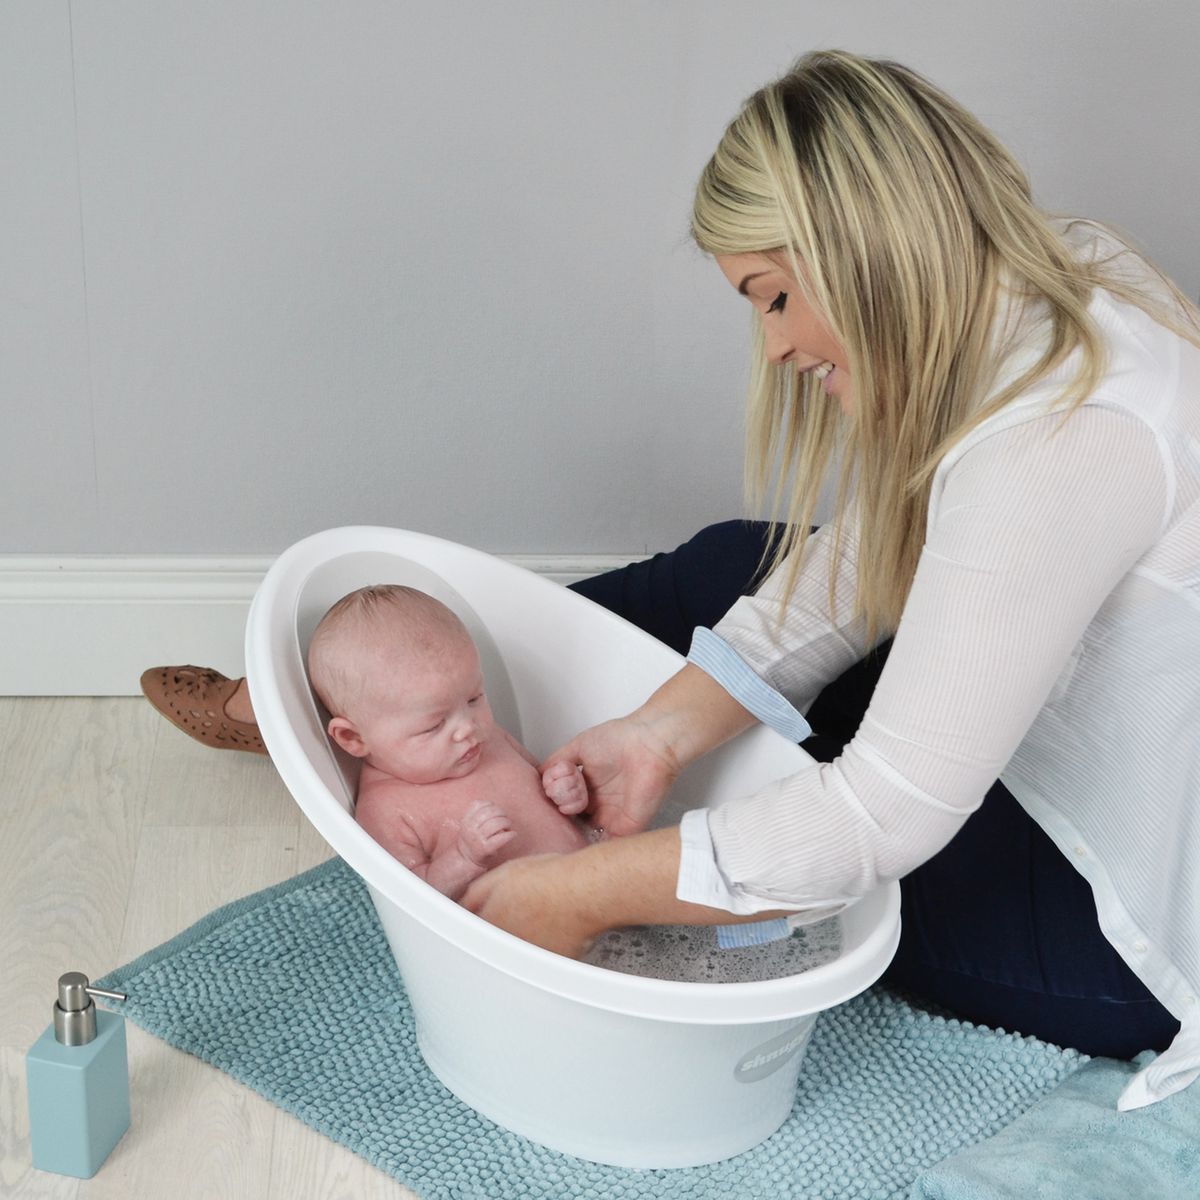 Comment choisir la bonne baignoire bébé?